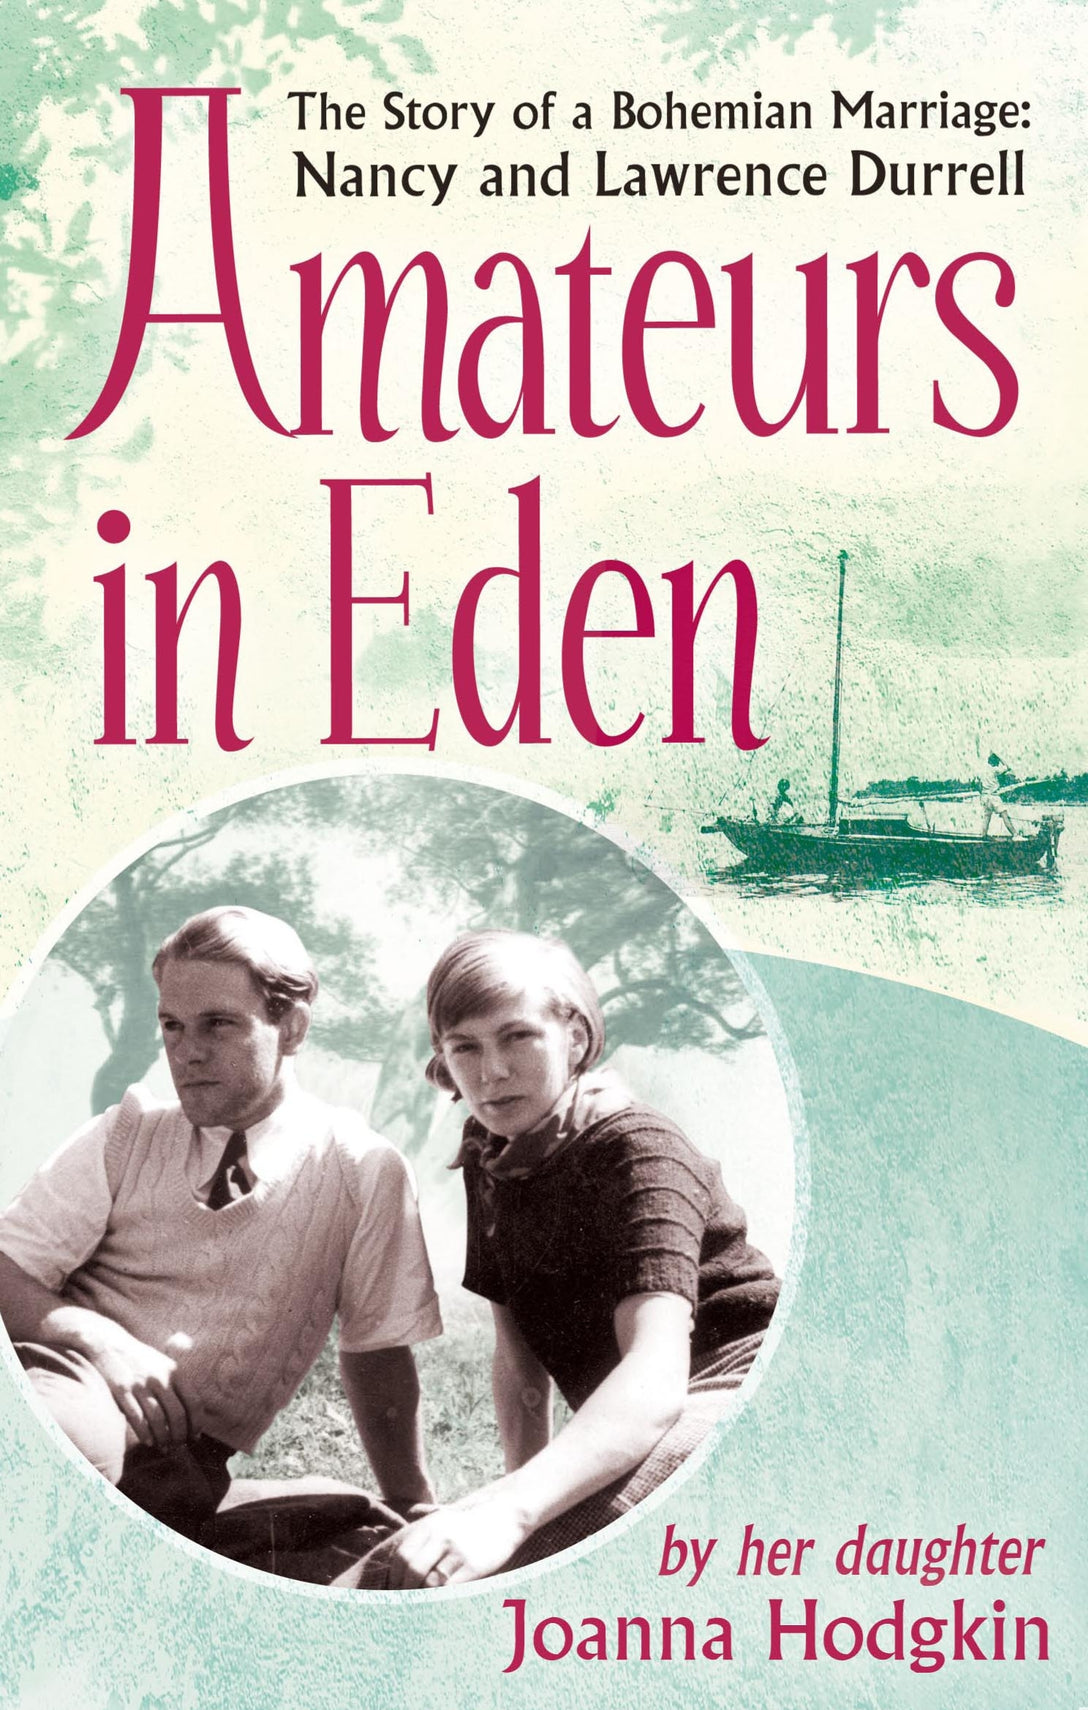 Amateurs In Eden by Joanna Hodgkin